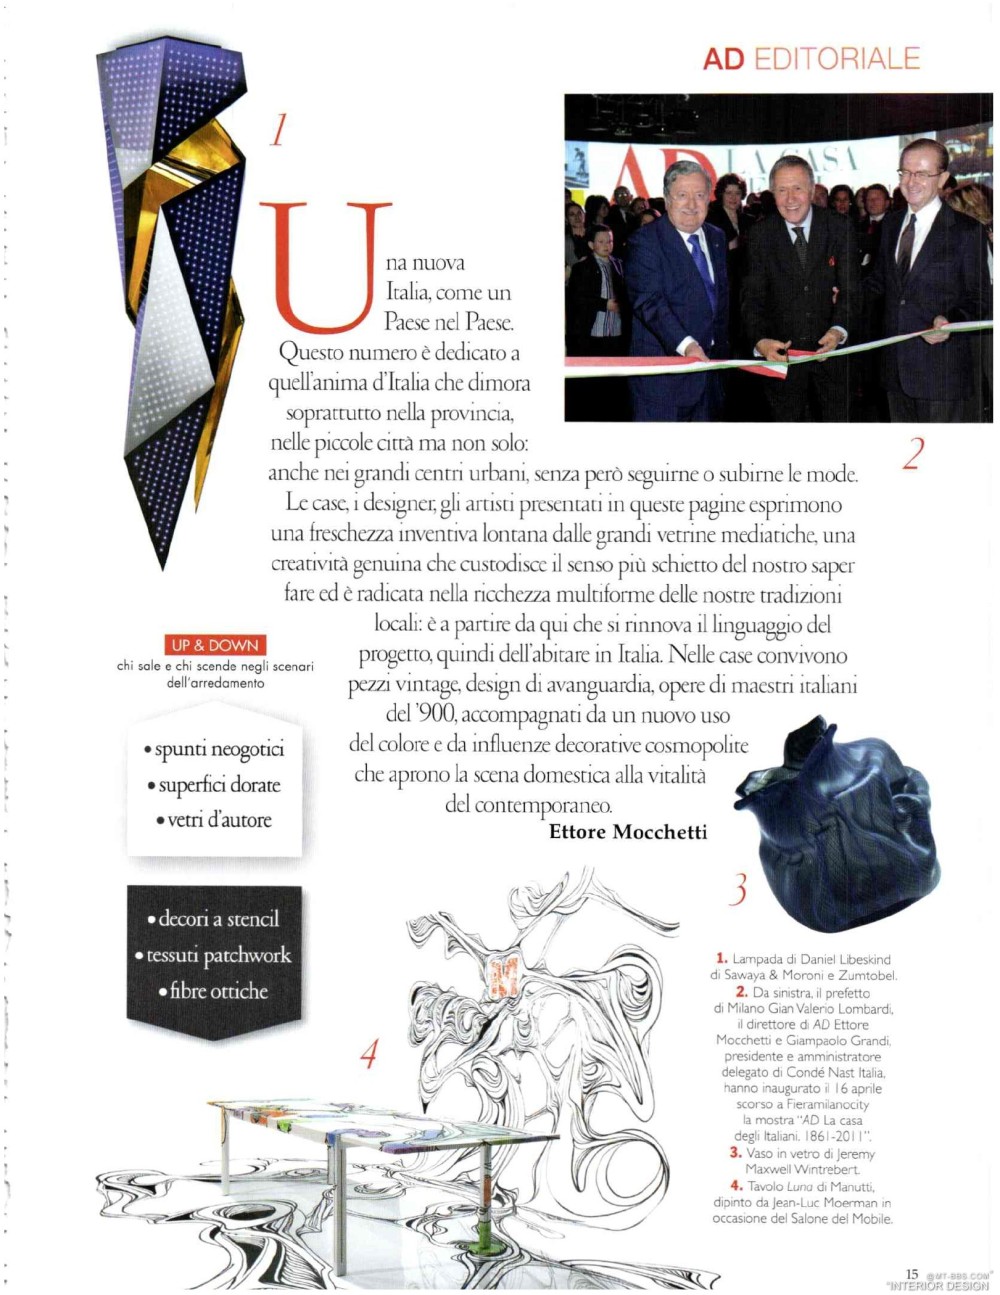 意大利AD 杂志 2012年全年JPG高清版本 全免（上传完毕）_0017.jpg